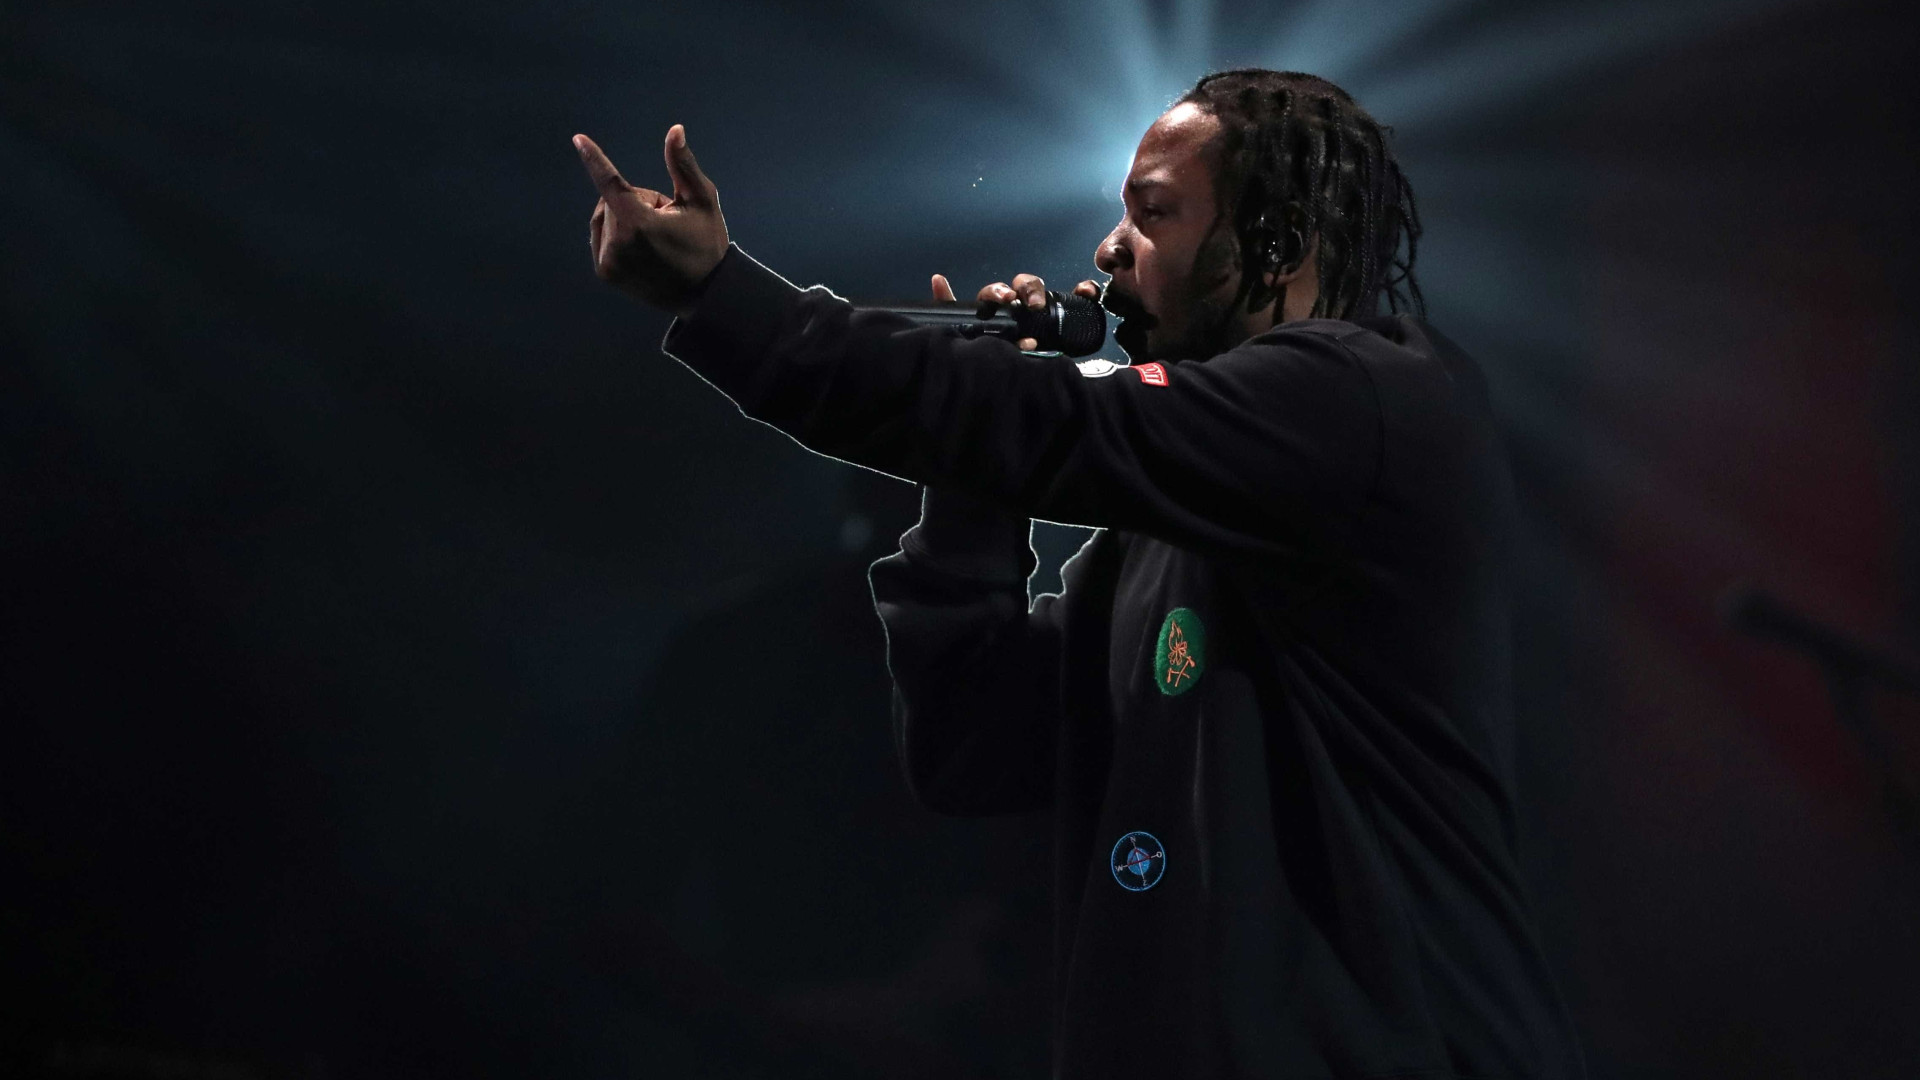 Pink será grande homenageada do VMA; 
Kendrick Lamar lidera indicações